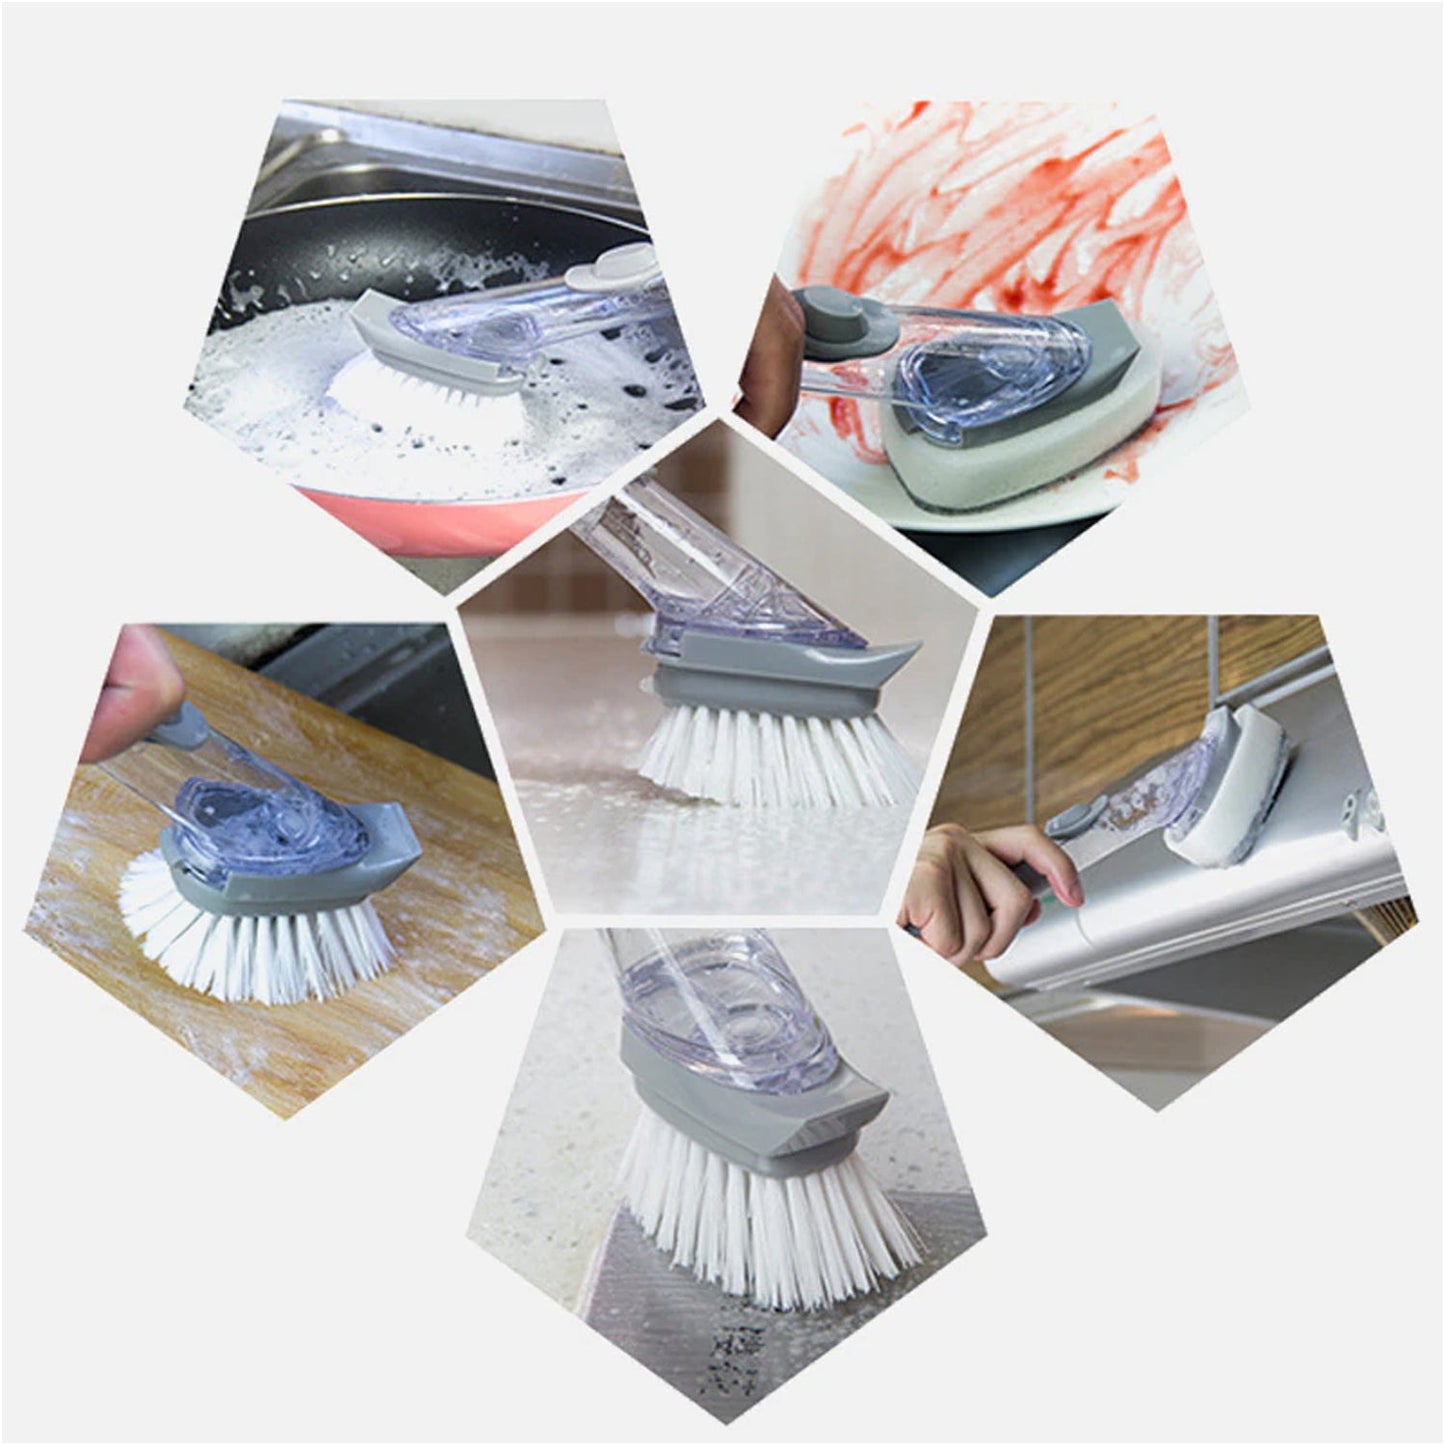 2-in-1 Dishwashing Brush, Long Handle Wash Pot Brush Washing Dish